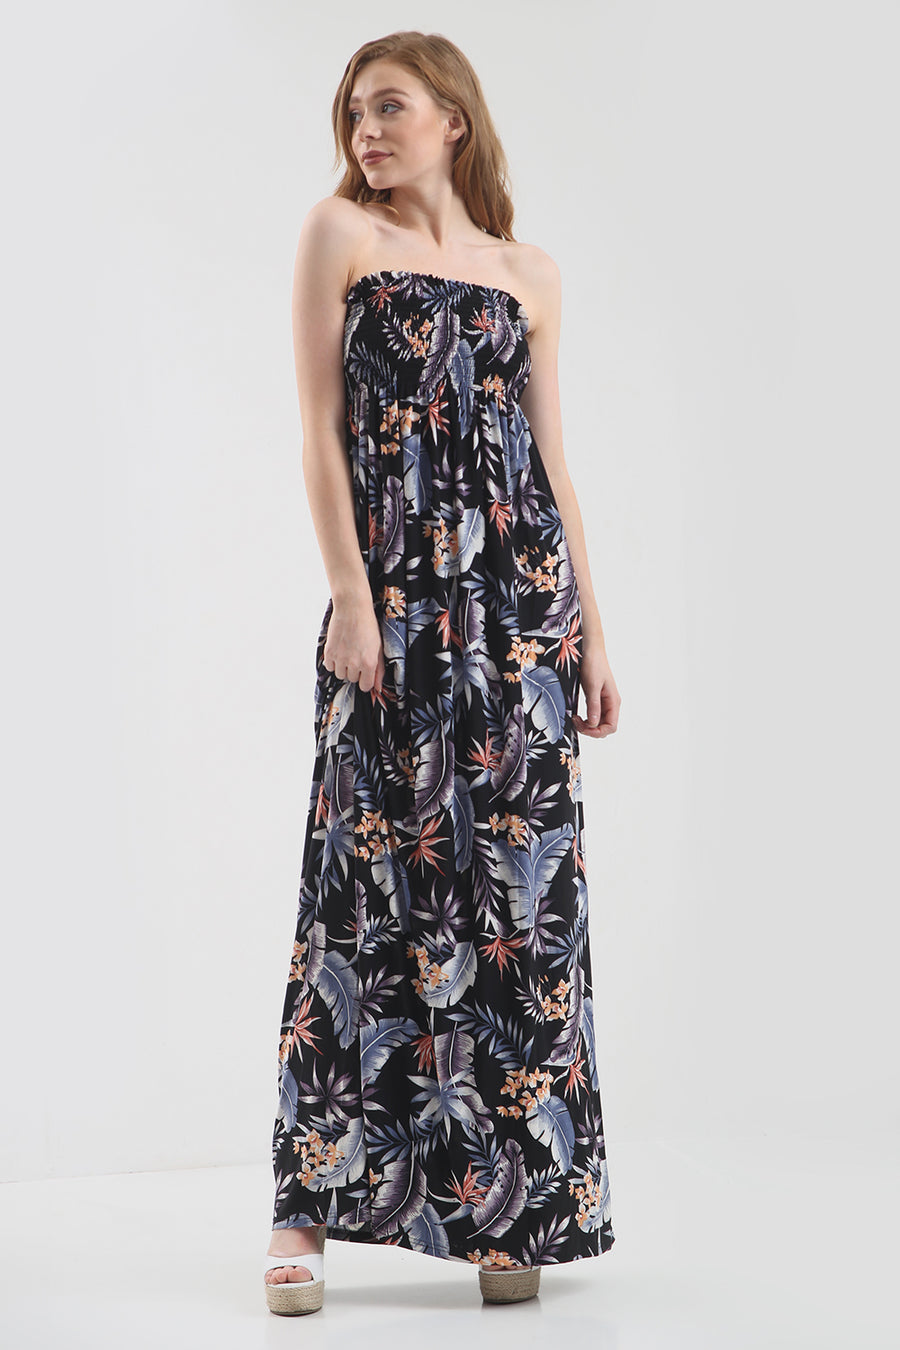 Tropical Print Bardot Black Maxi Dress - bejealous-com